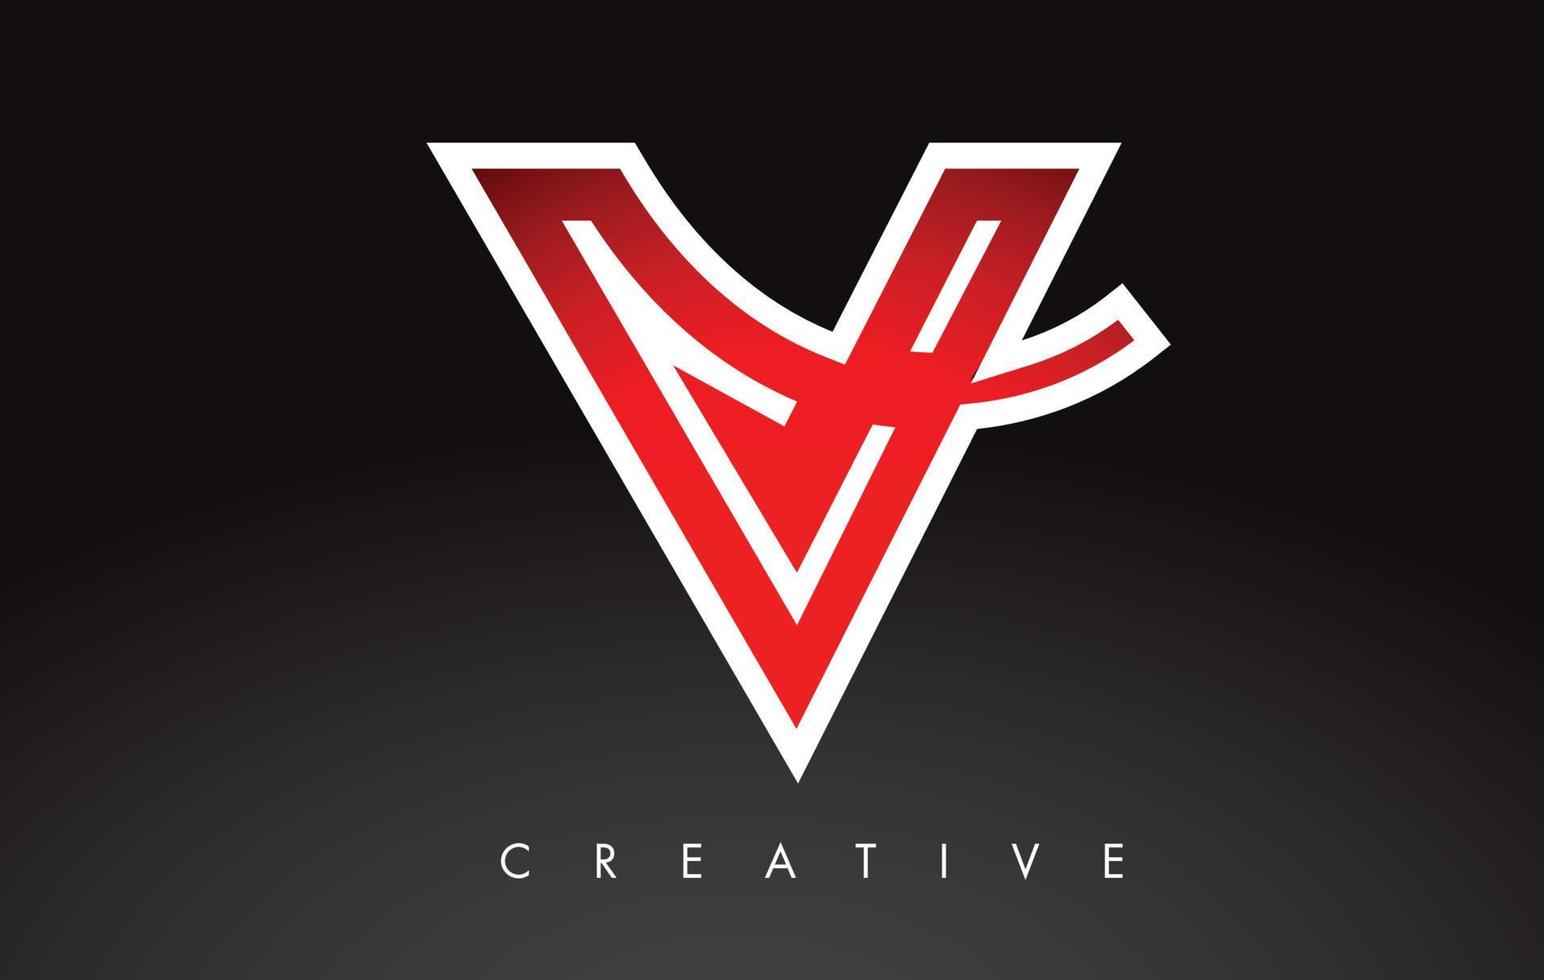 logo del design della lettera v. logo icona lettera v con swoosh moderno vettore